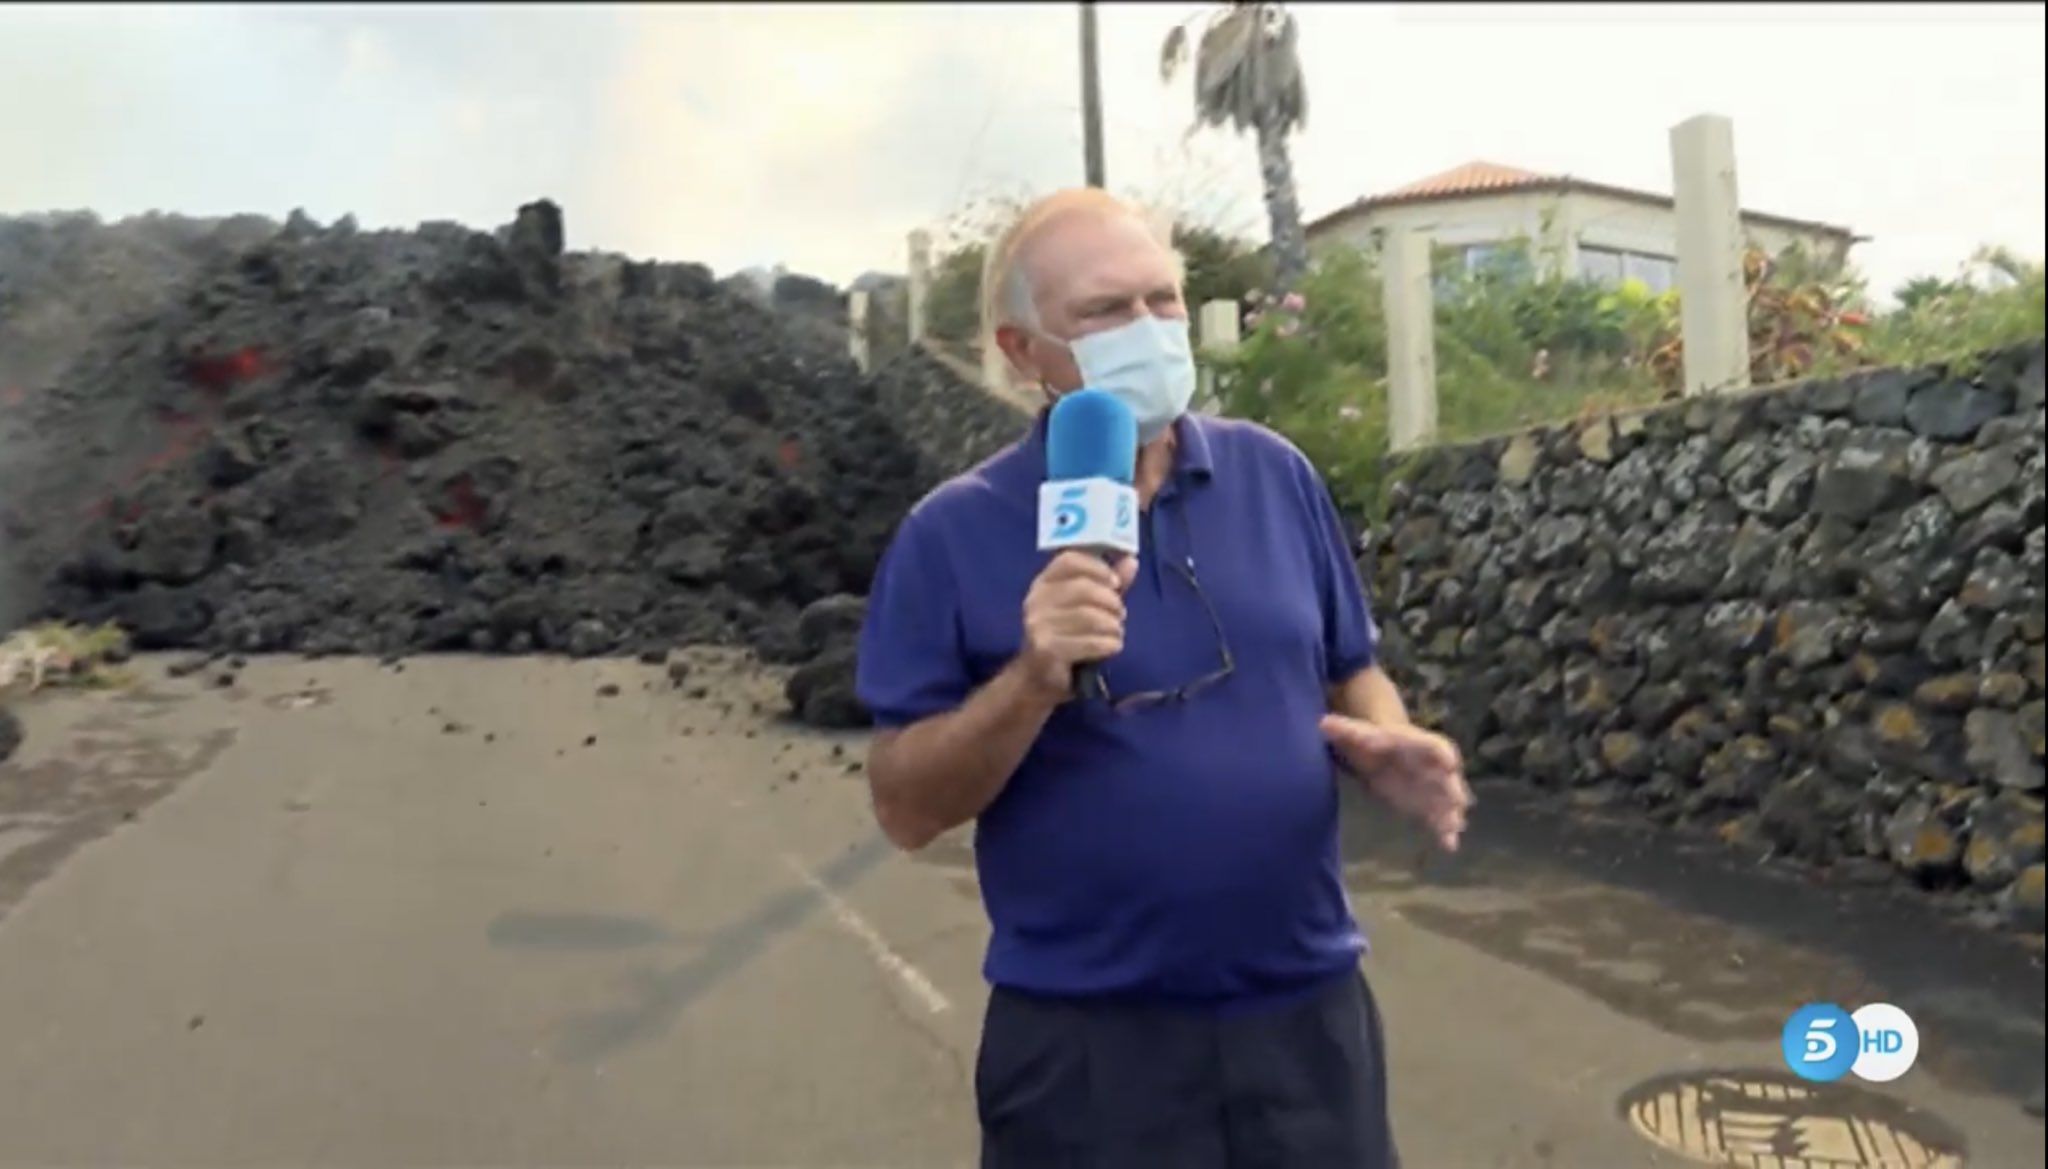 Pedro Piqueras, a pie de lava, tendencia en Twitter por su cobertura de la erupción del volcán de La Palma